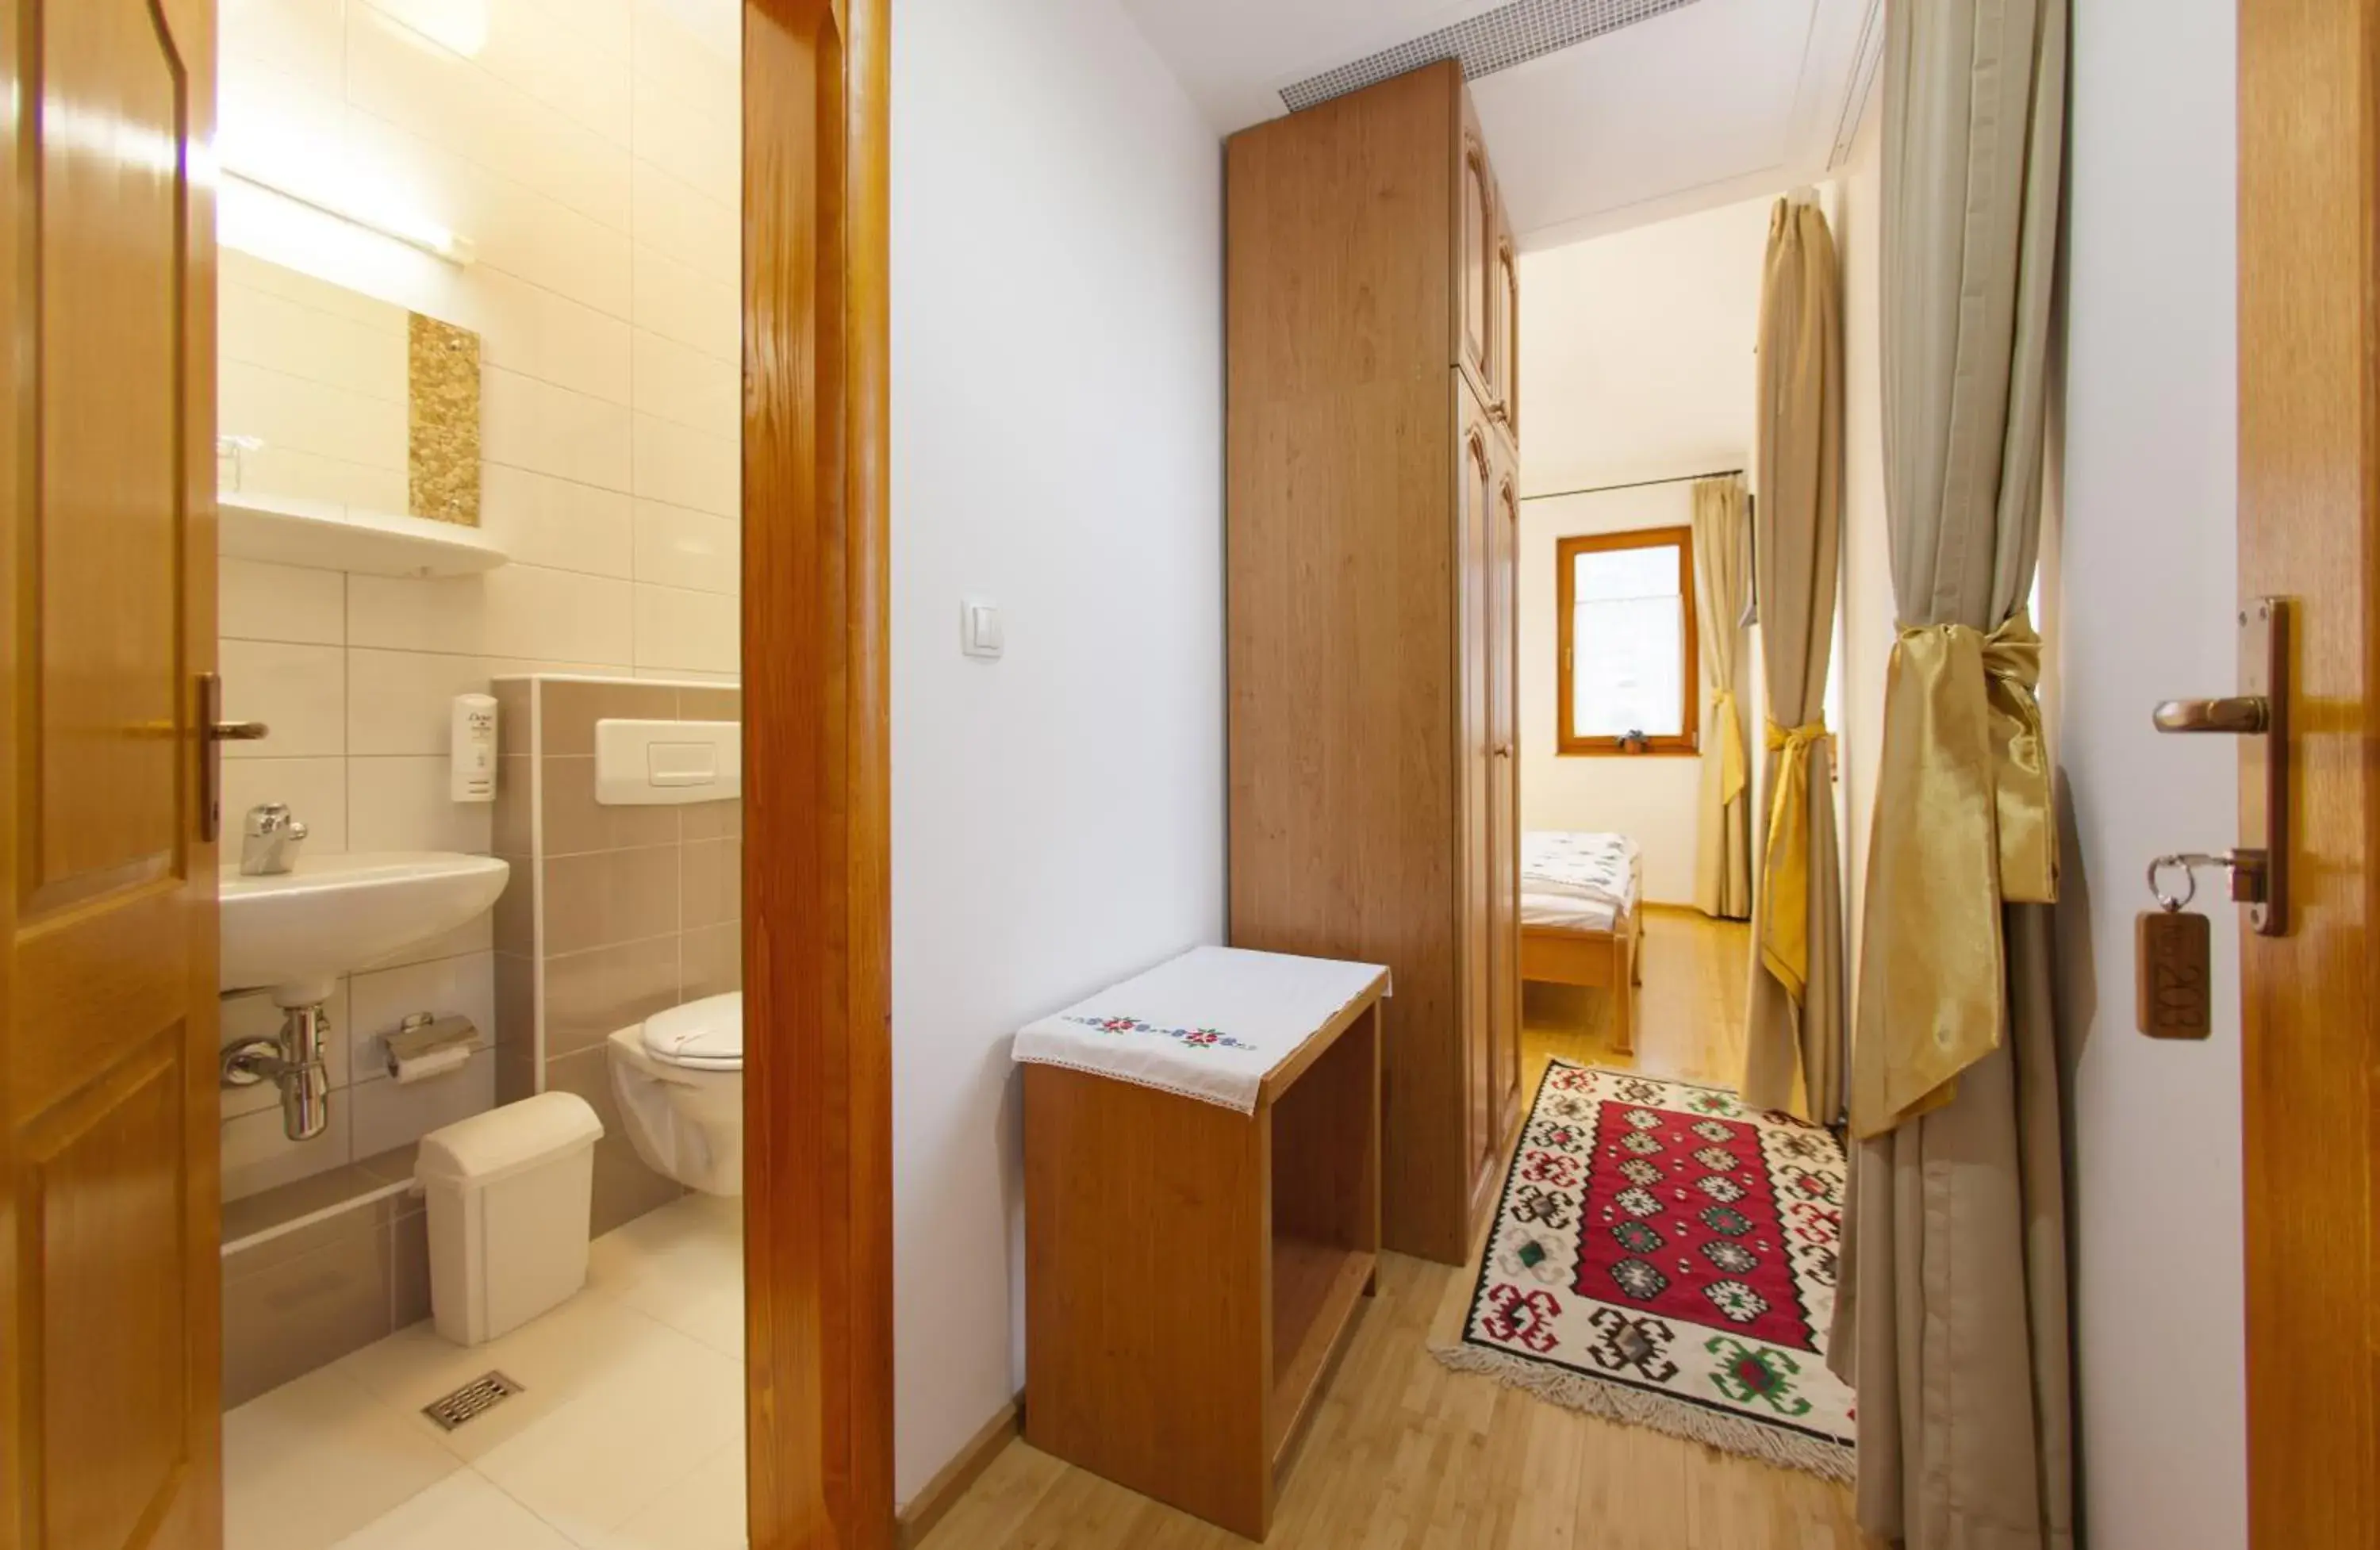 Bathroom in Hotel Almira